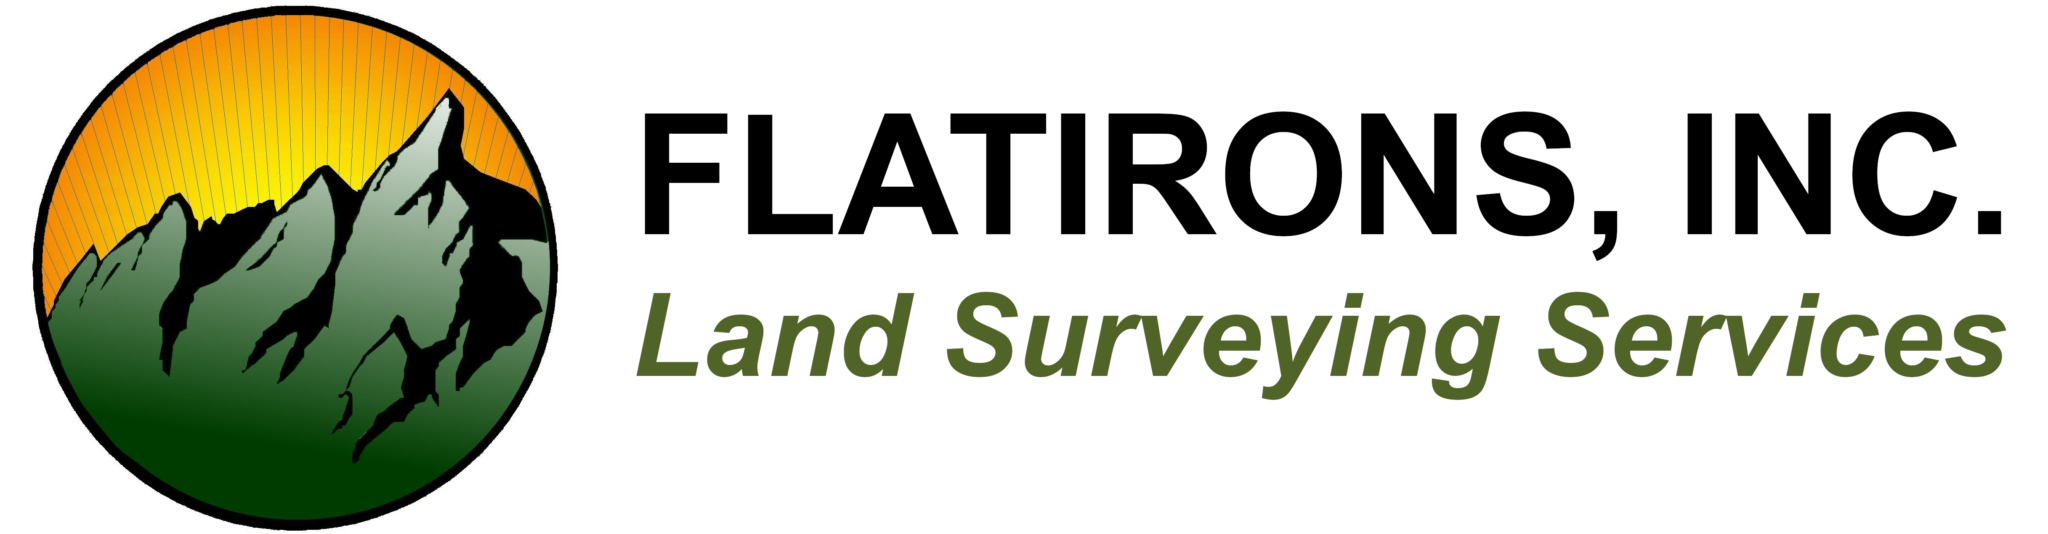 Flatirons Land Surveying